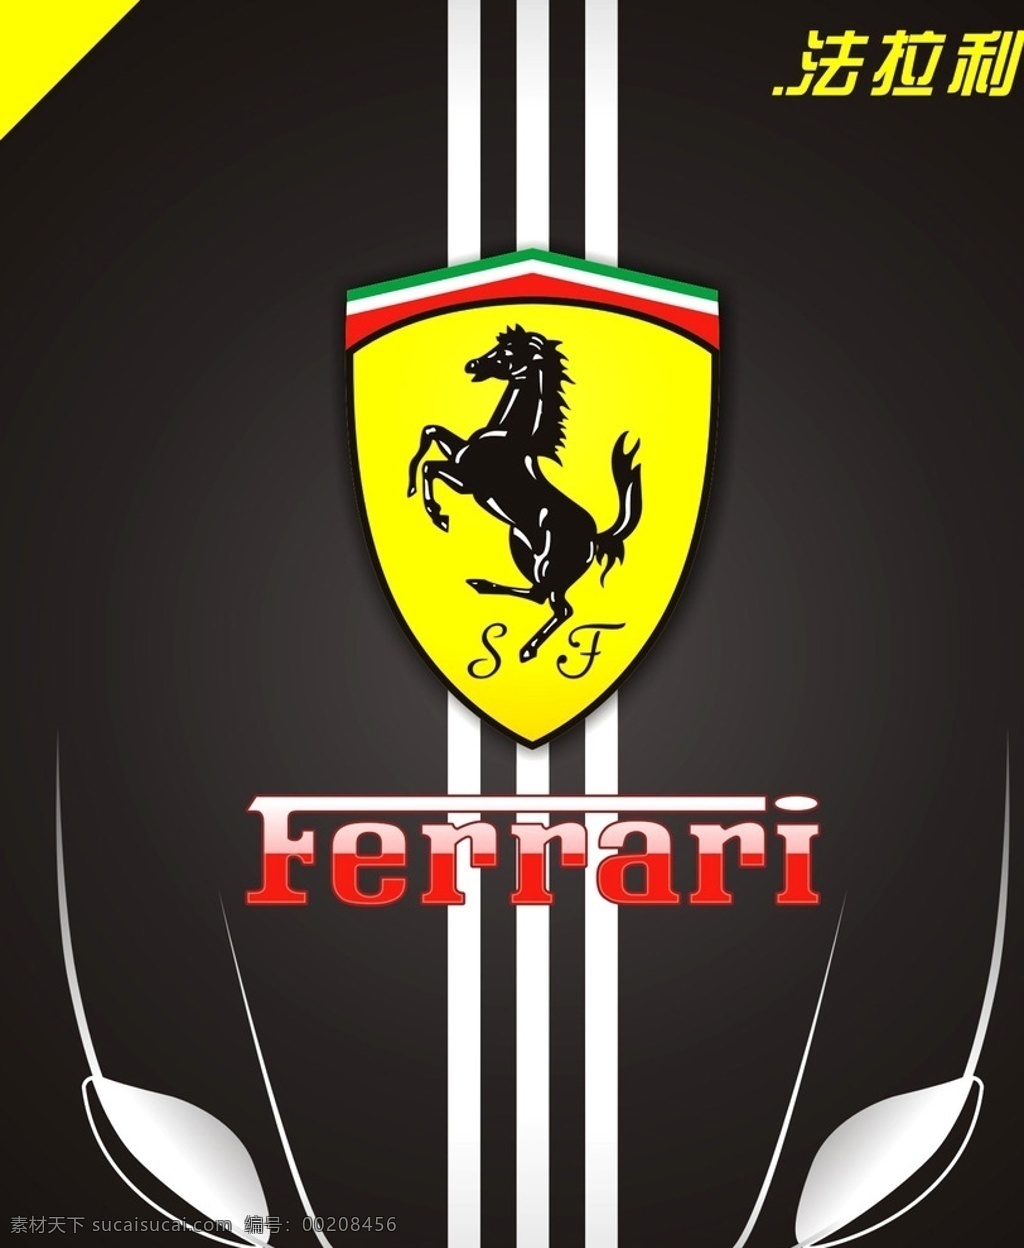 法拉利 汽车 海报 法拉利标志 logo 法拉利设计 法拉利海报 公共标识标志 汽车海报 ferrari